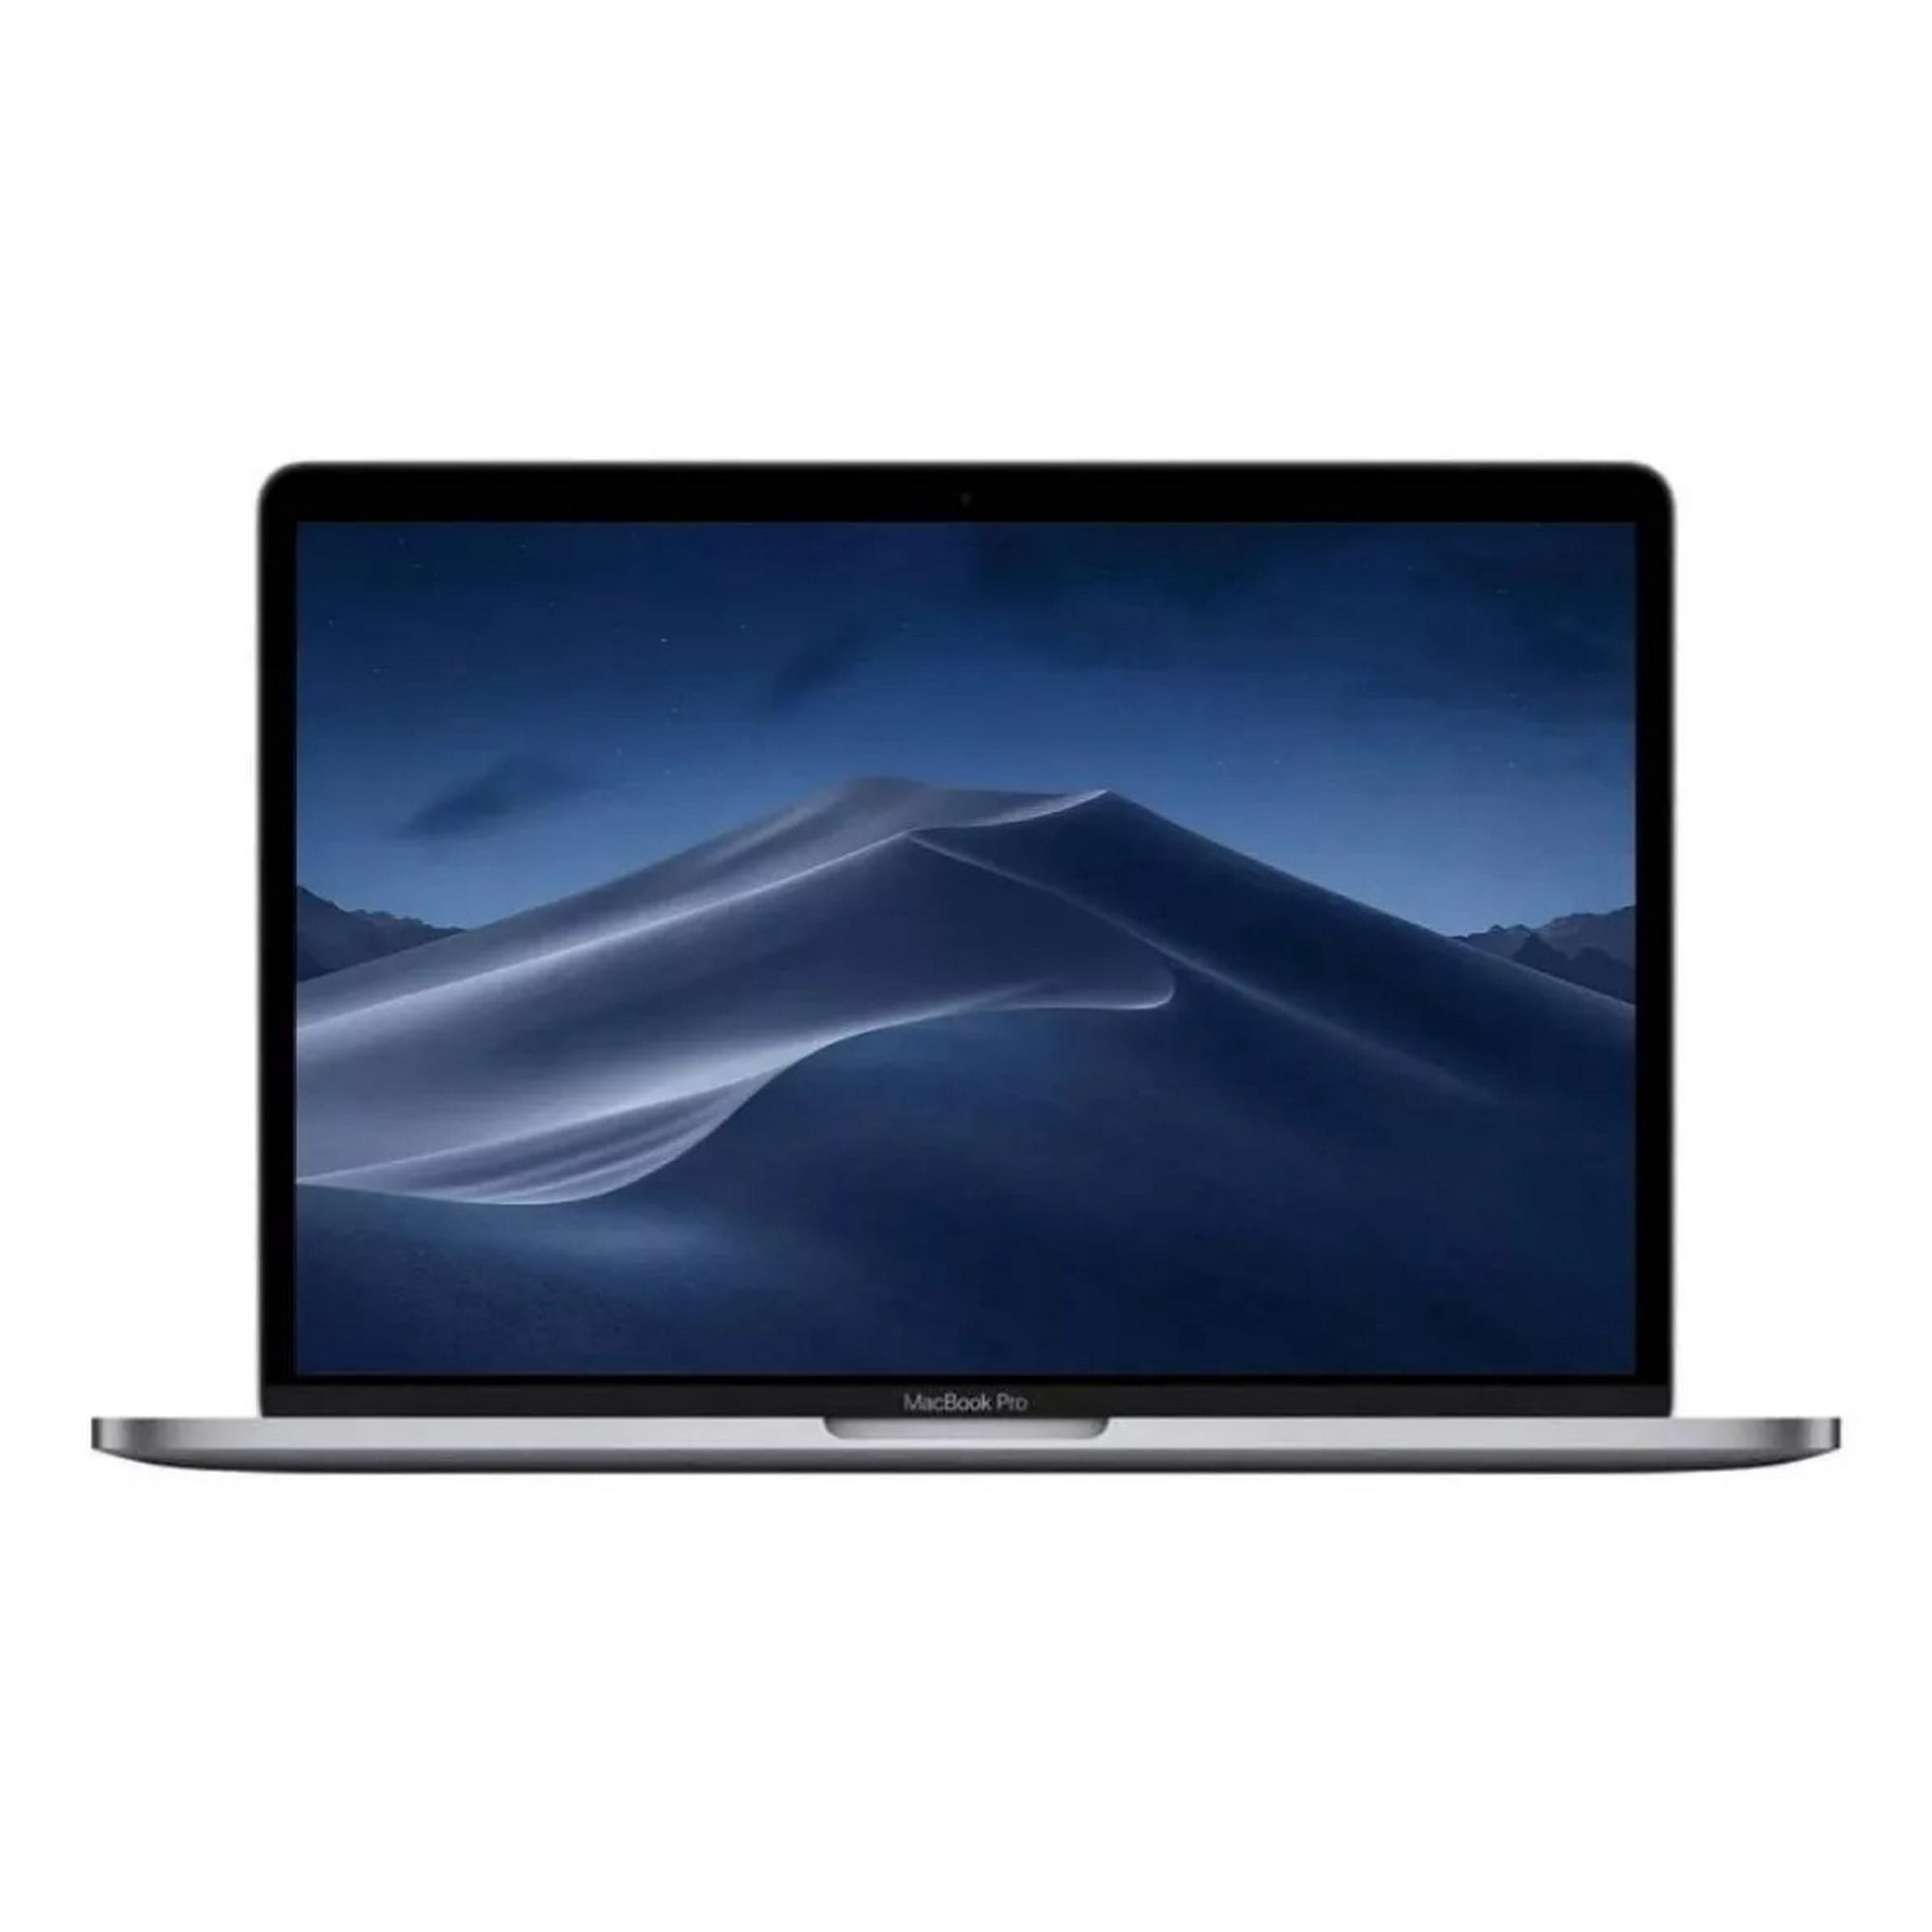 Macbook Pro (2019) Touchbar Intel Core I7 16Gb Ram 500Gb Ssd A1989 - Reacondicionado